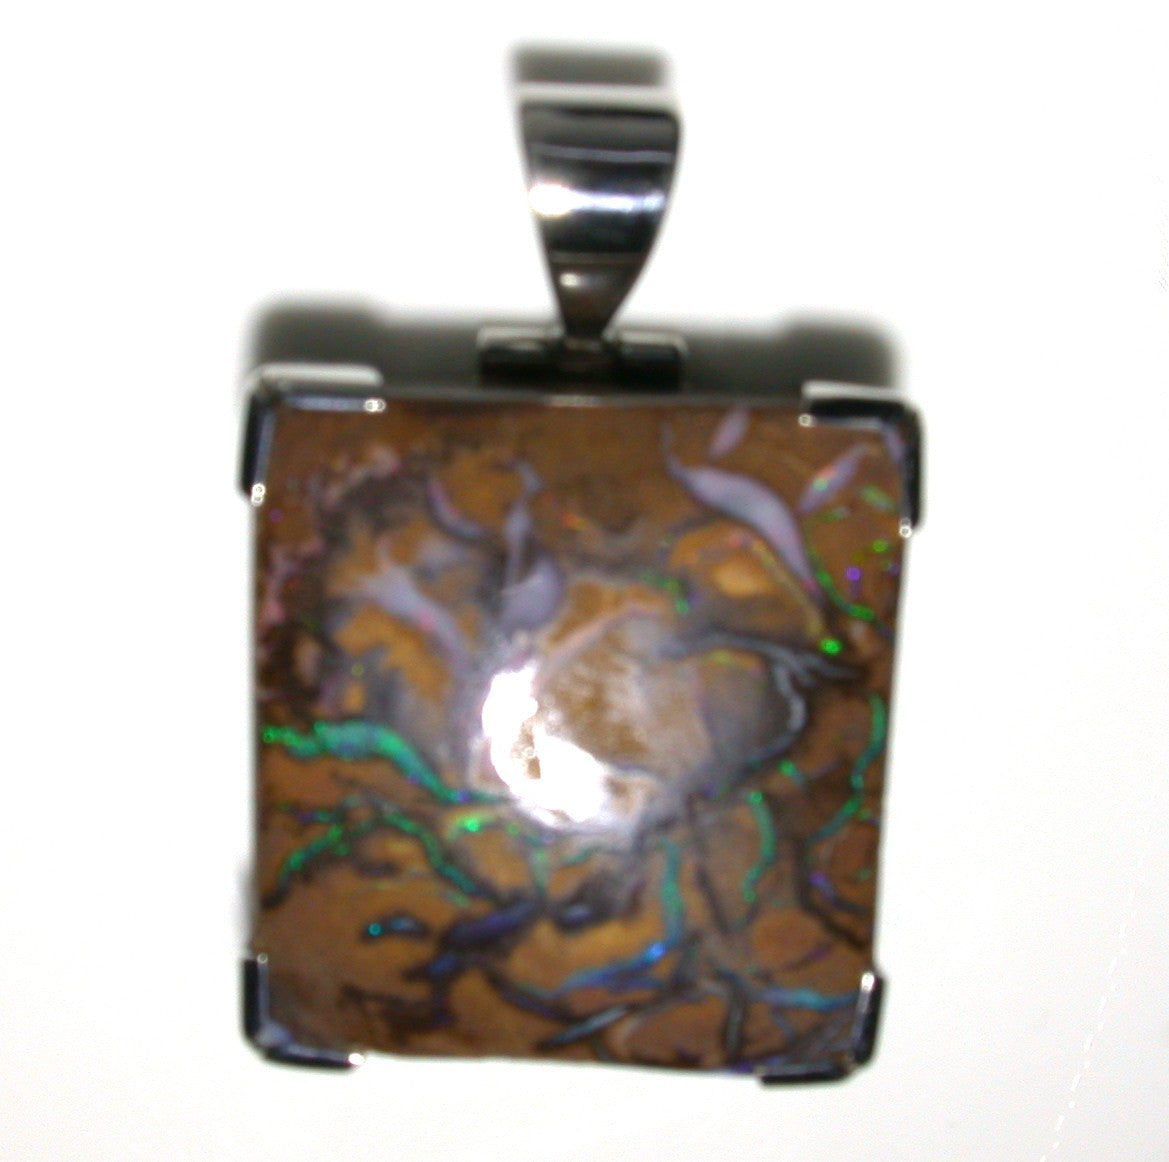 Green solid boulder matrix opal pendant